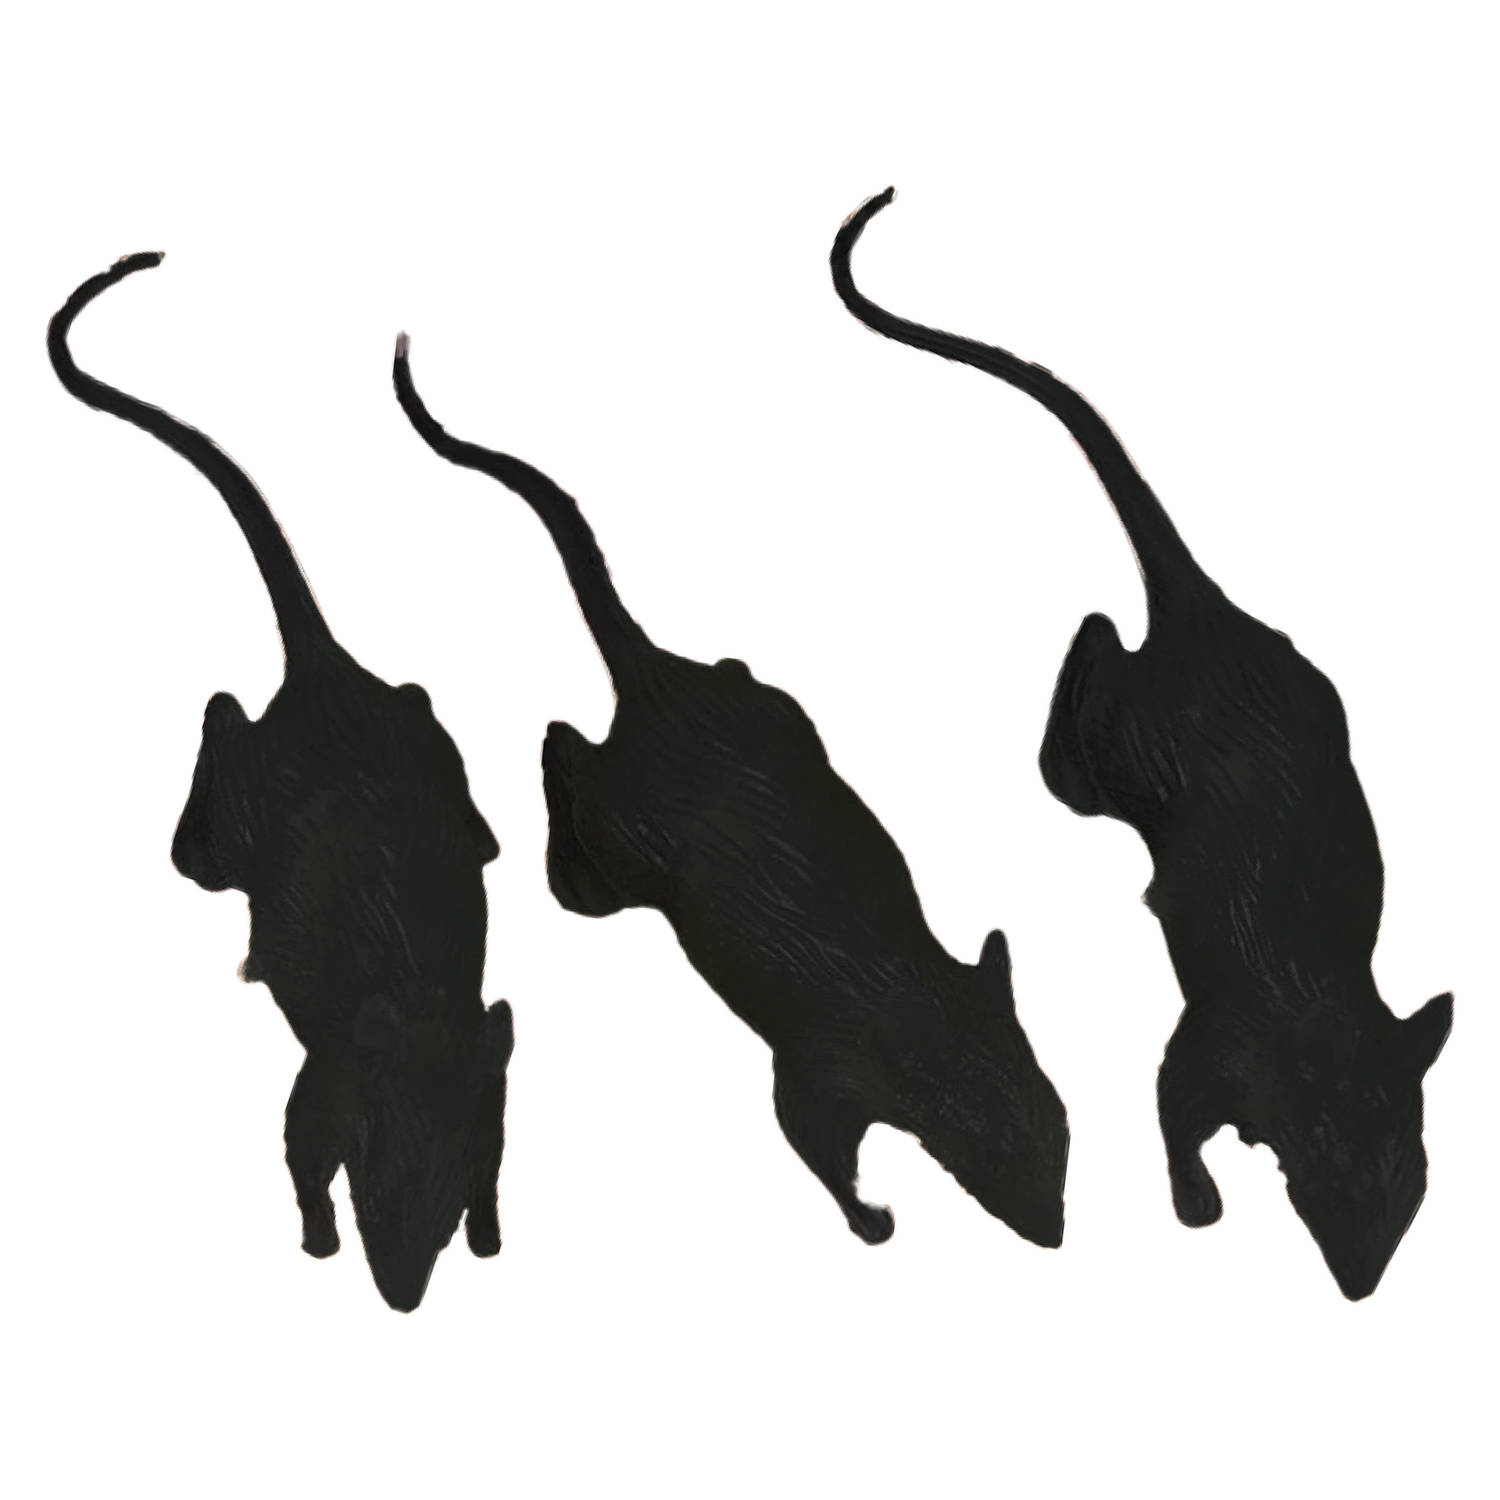 Fiestas nep ratten 6 cm - zwart - 3x - Horror/griezel thema decoratie dieren